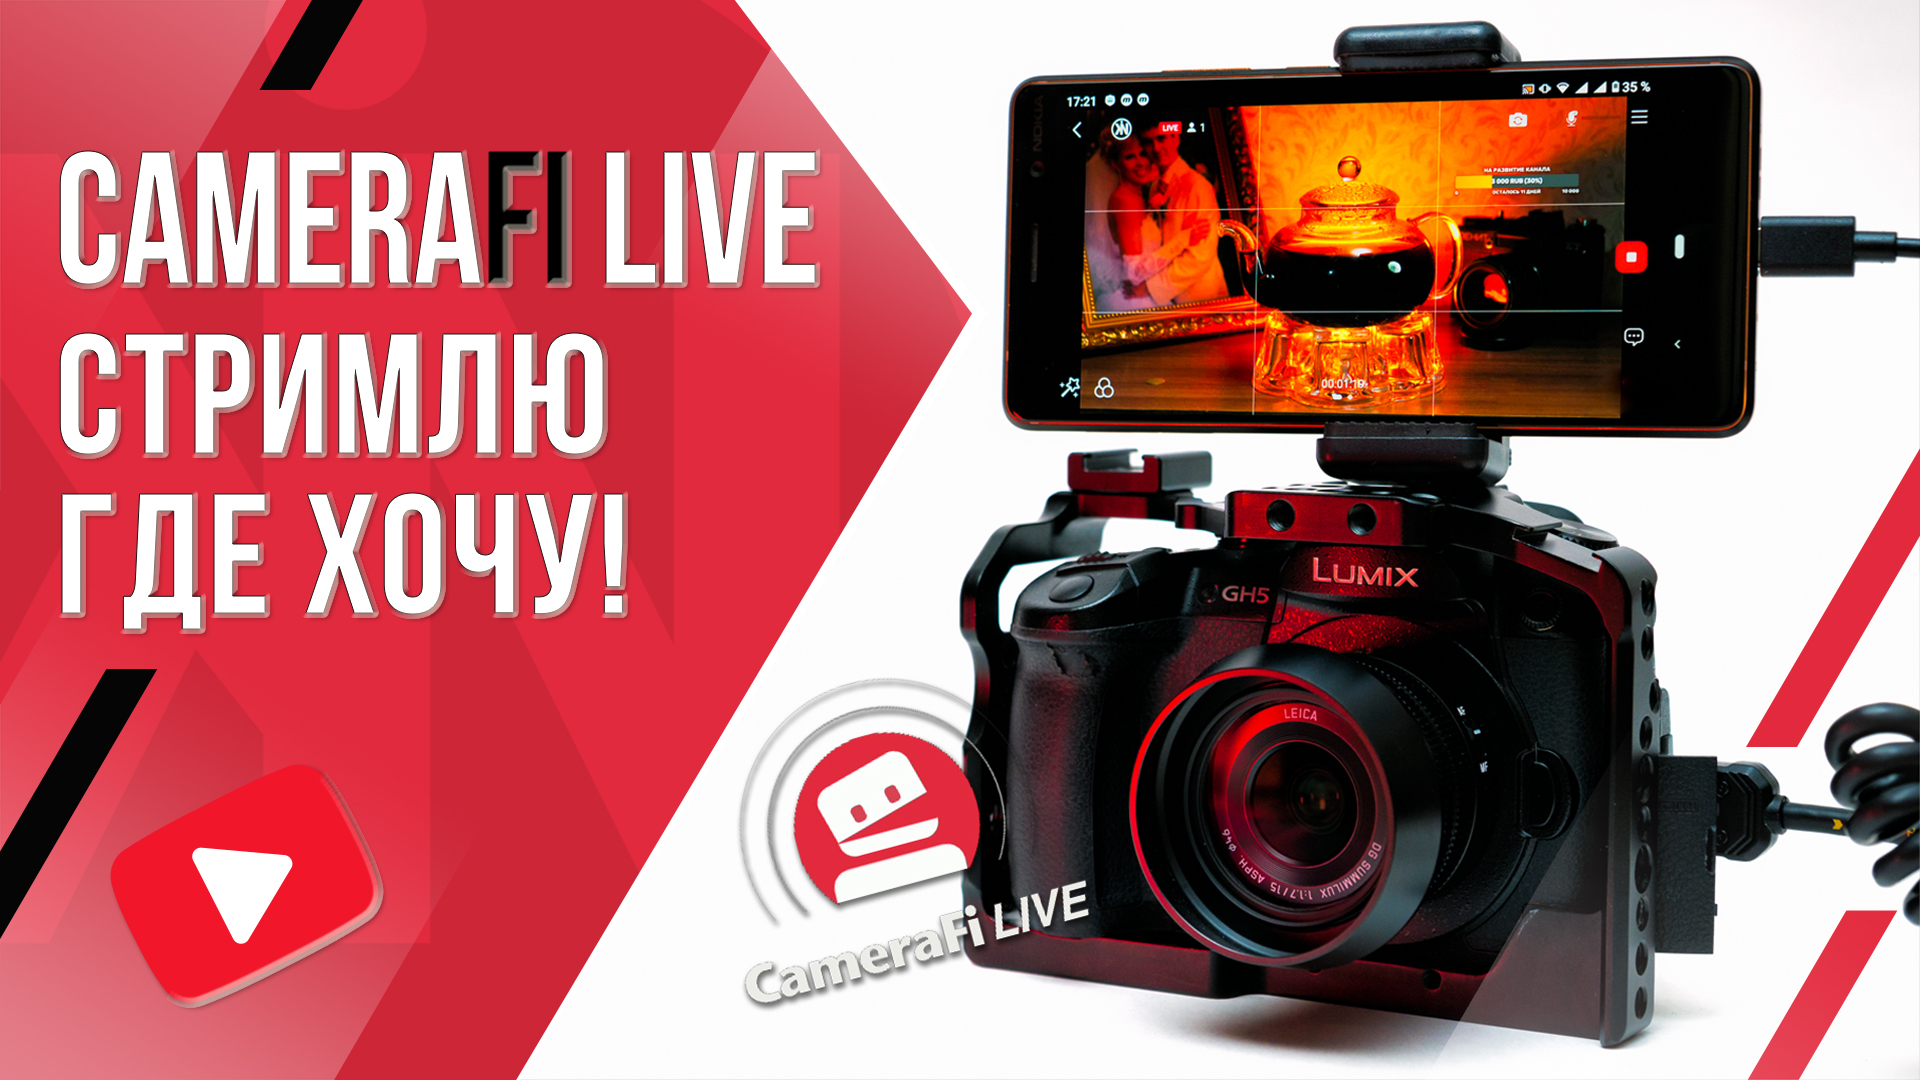 CameraFI Live | Бюджетная трансляция по 4G сети с любой камерой